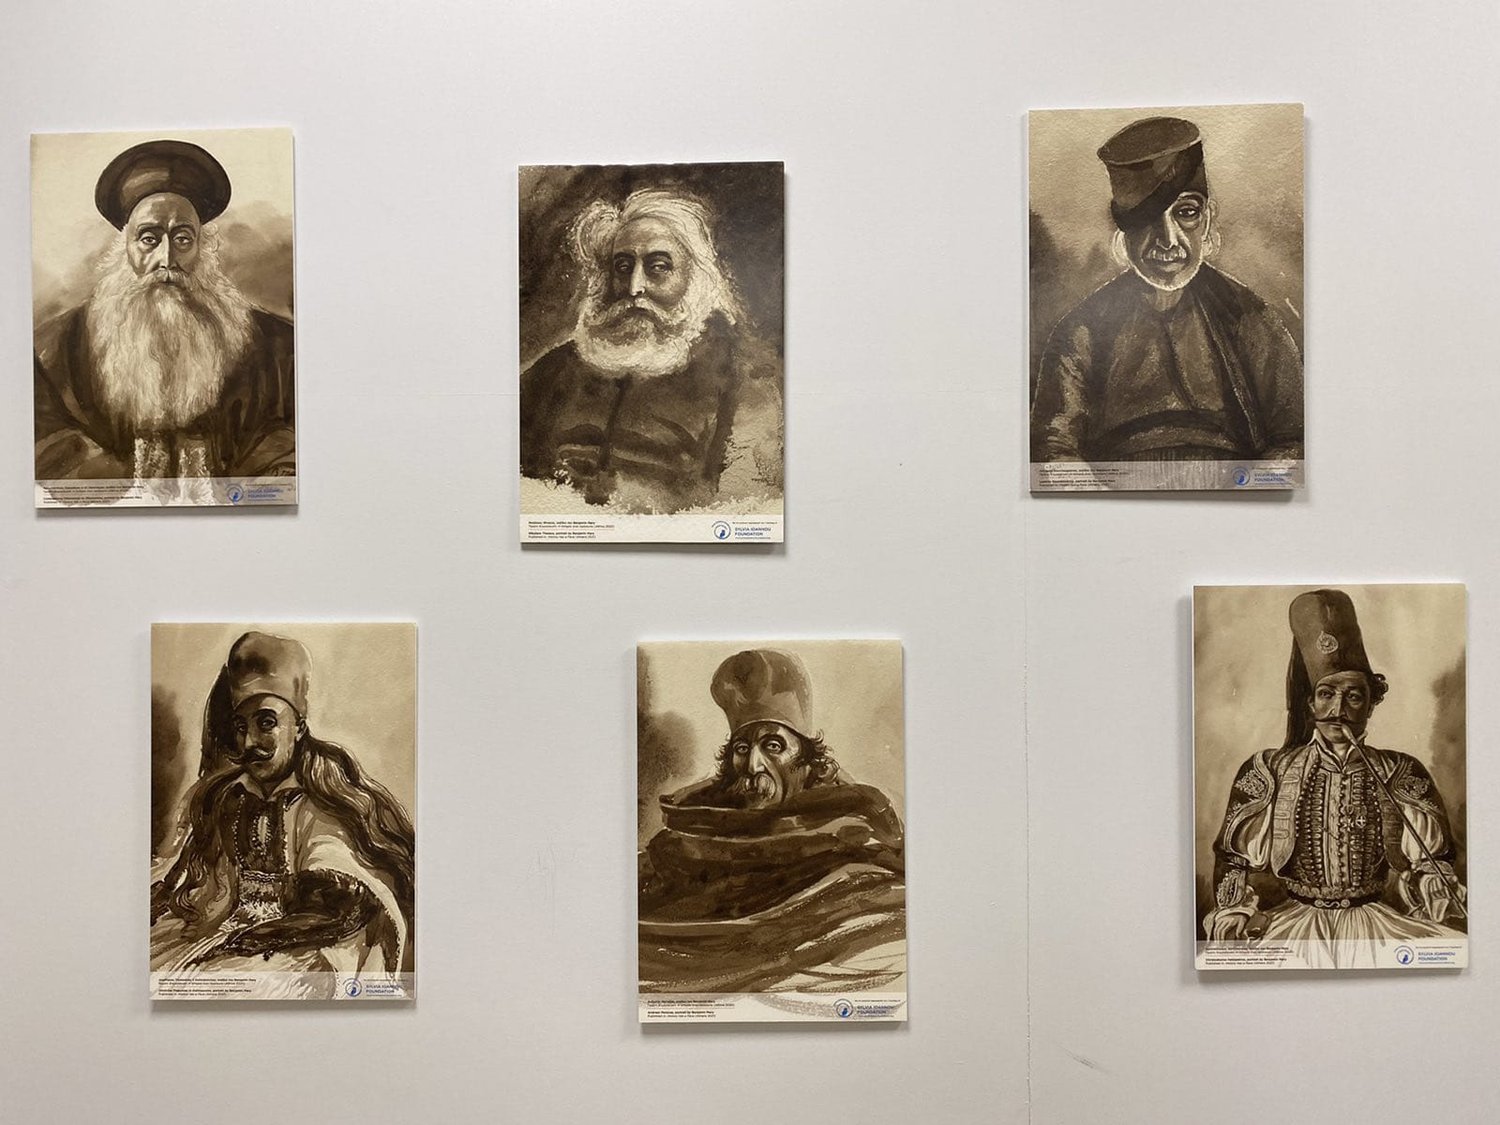 Έκθεση πορτραίτων του Benjamin Mary στους χώρους της Πρεσβείας της Ελλάδος στο Λονδίνο  (Μάικ Μητακίδης, www.ertnews.gr)